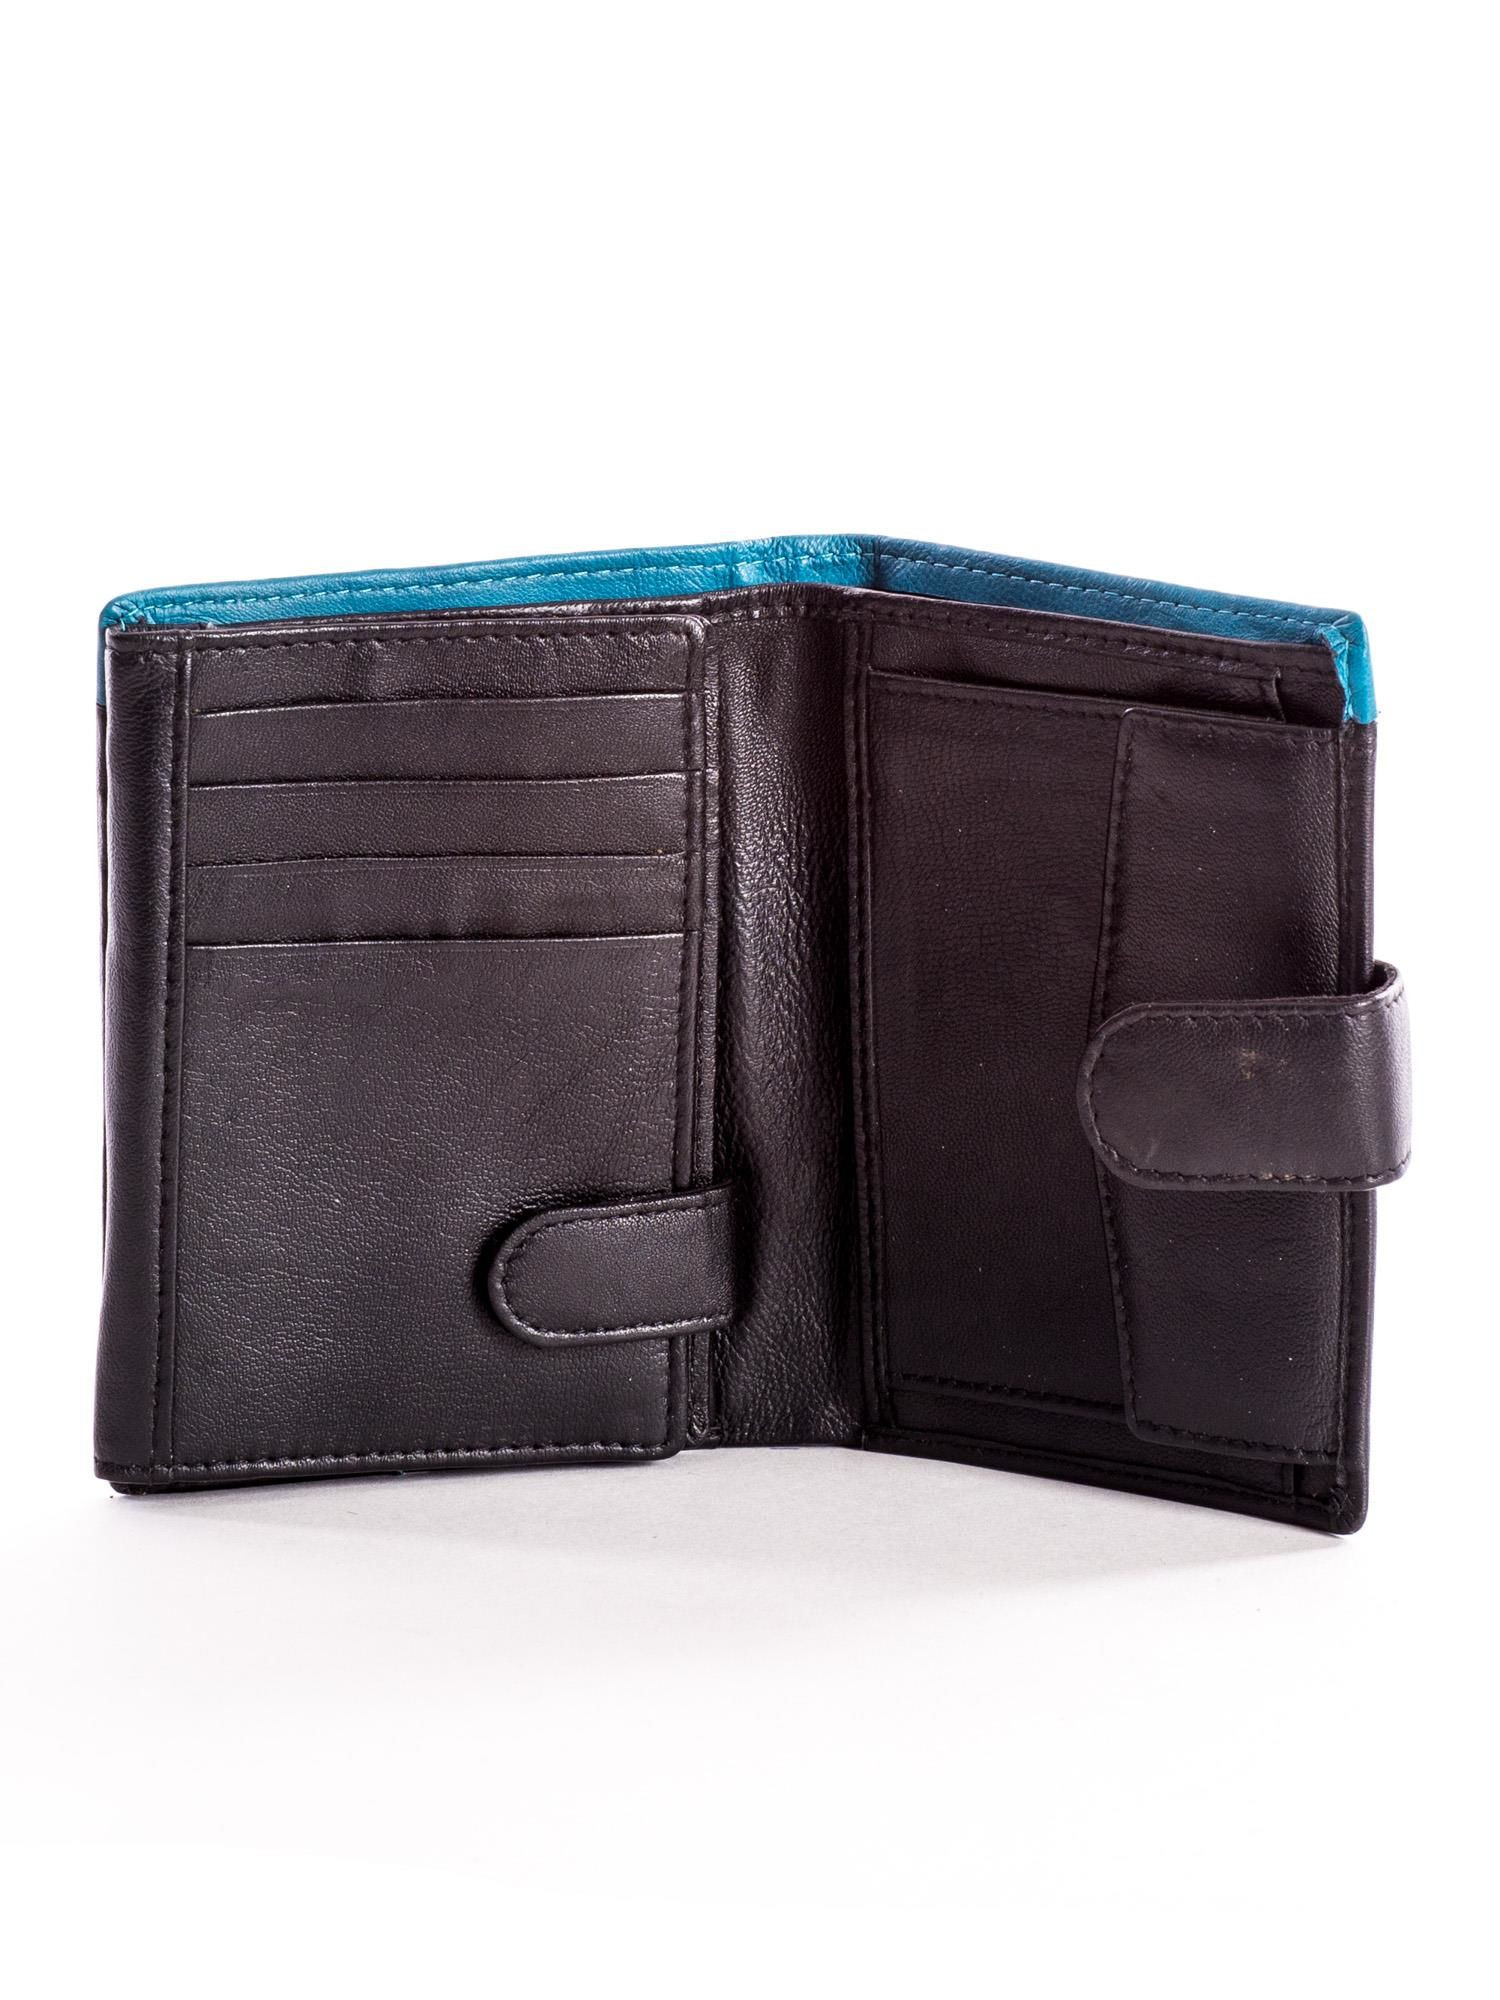 Peněženka CE PR černá a modrá model 14833536 - FPrice Velikost: jedna velikost